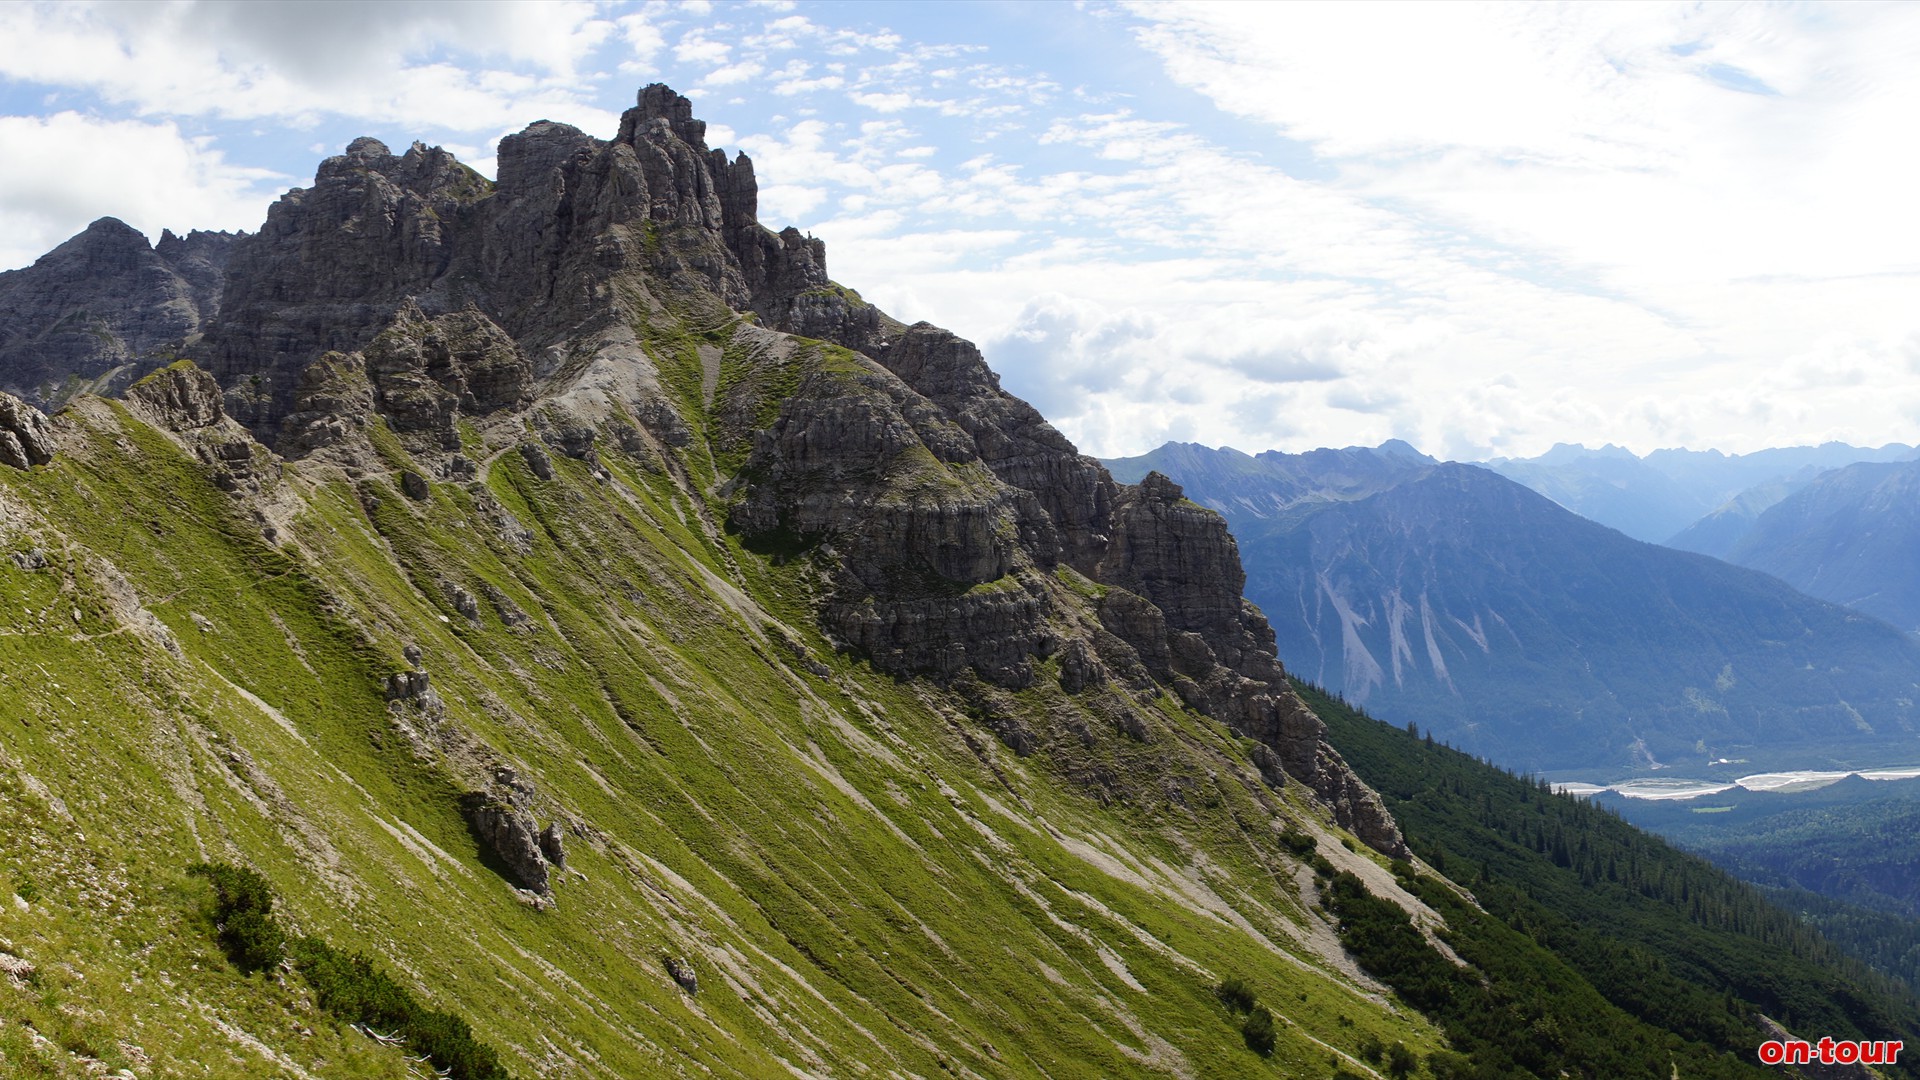 Nun wieder zurck zur Landsberger Htte (rot) oder Abstieg bis zur Weggabelung und weiter Richtung Leilachspitze, vorbei an den Krottenkpfen (schwarz). Rechts unten das Lechtal.